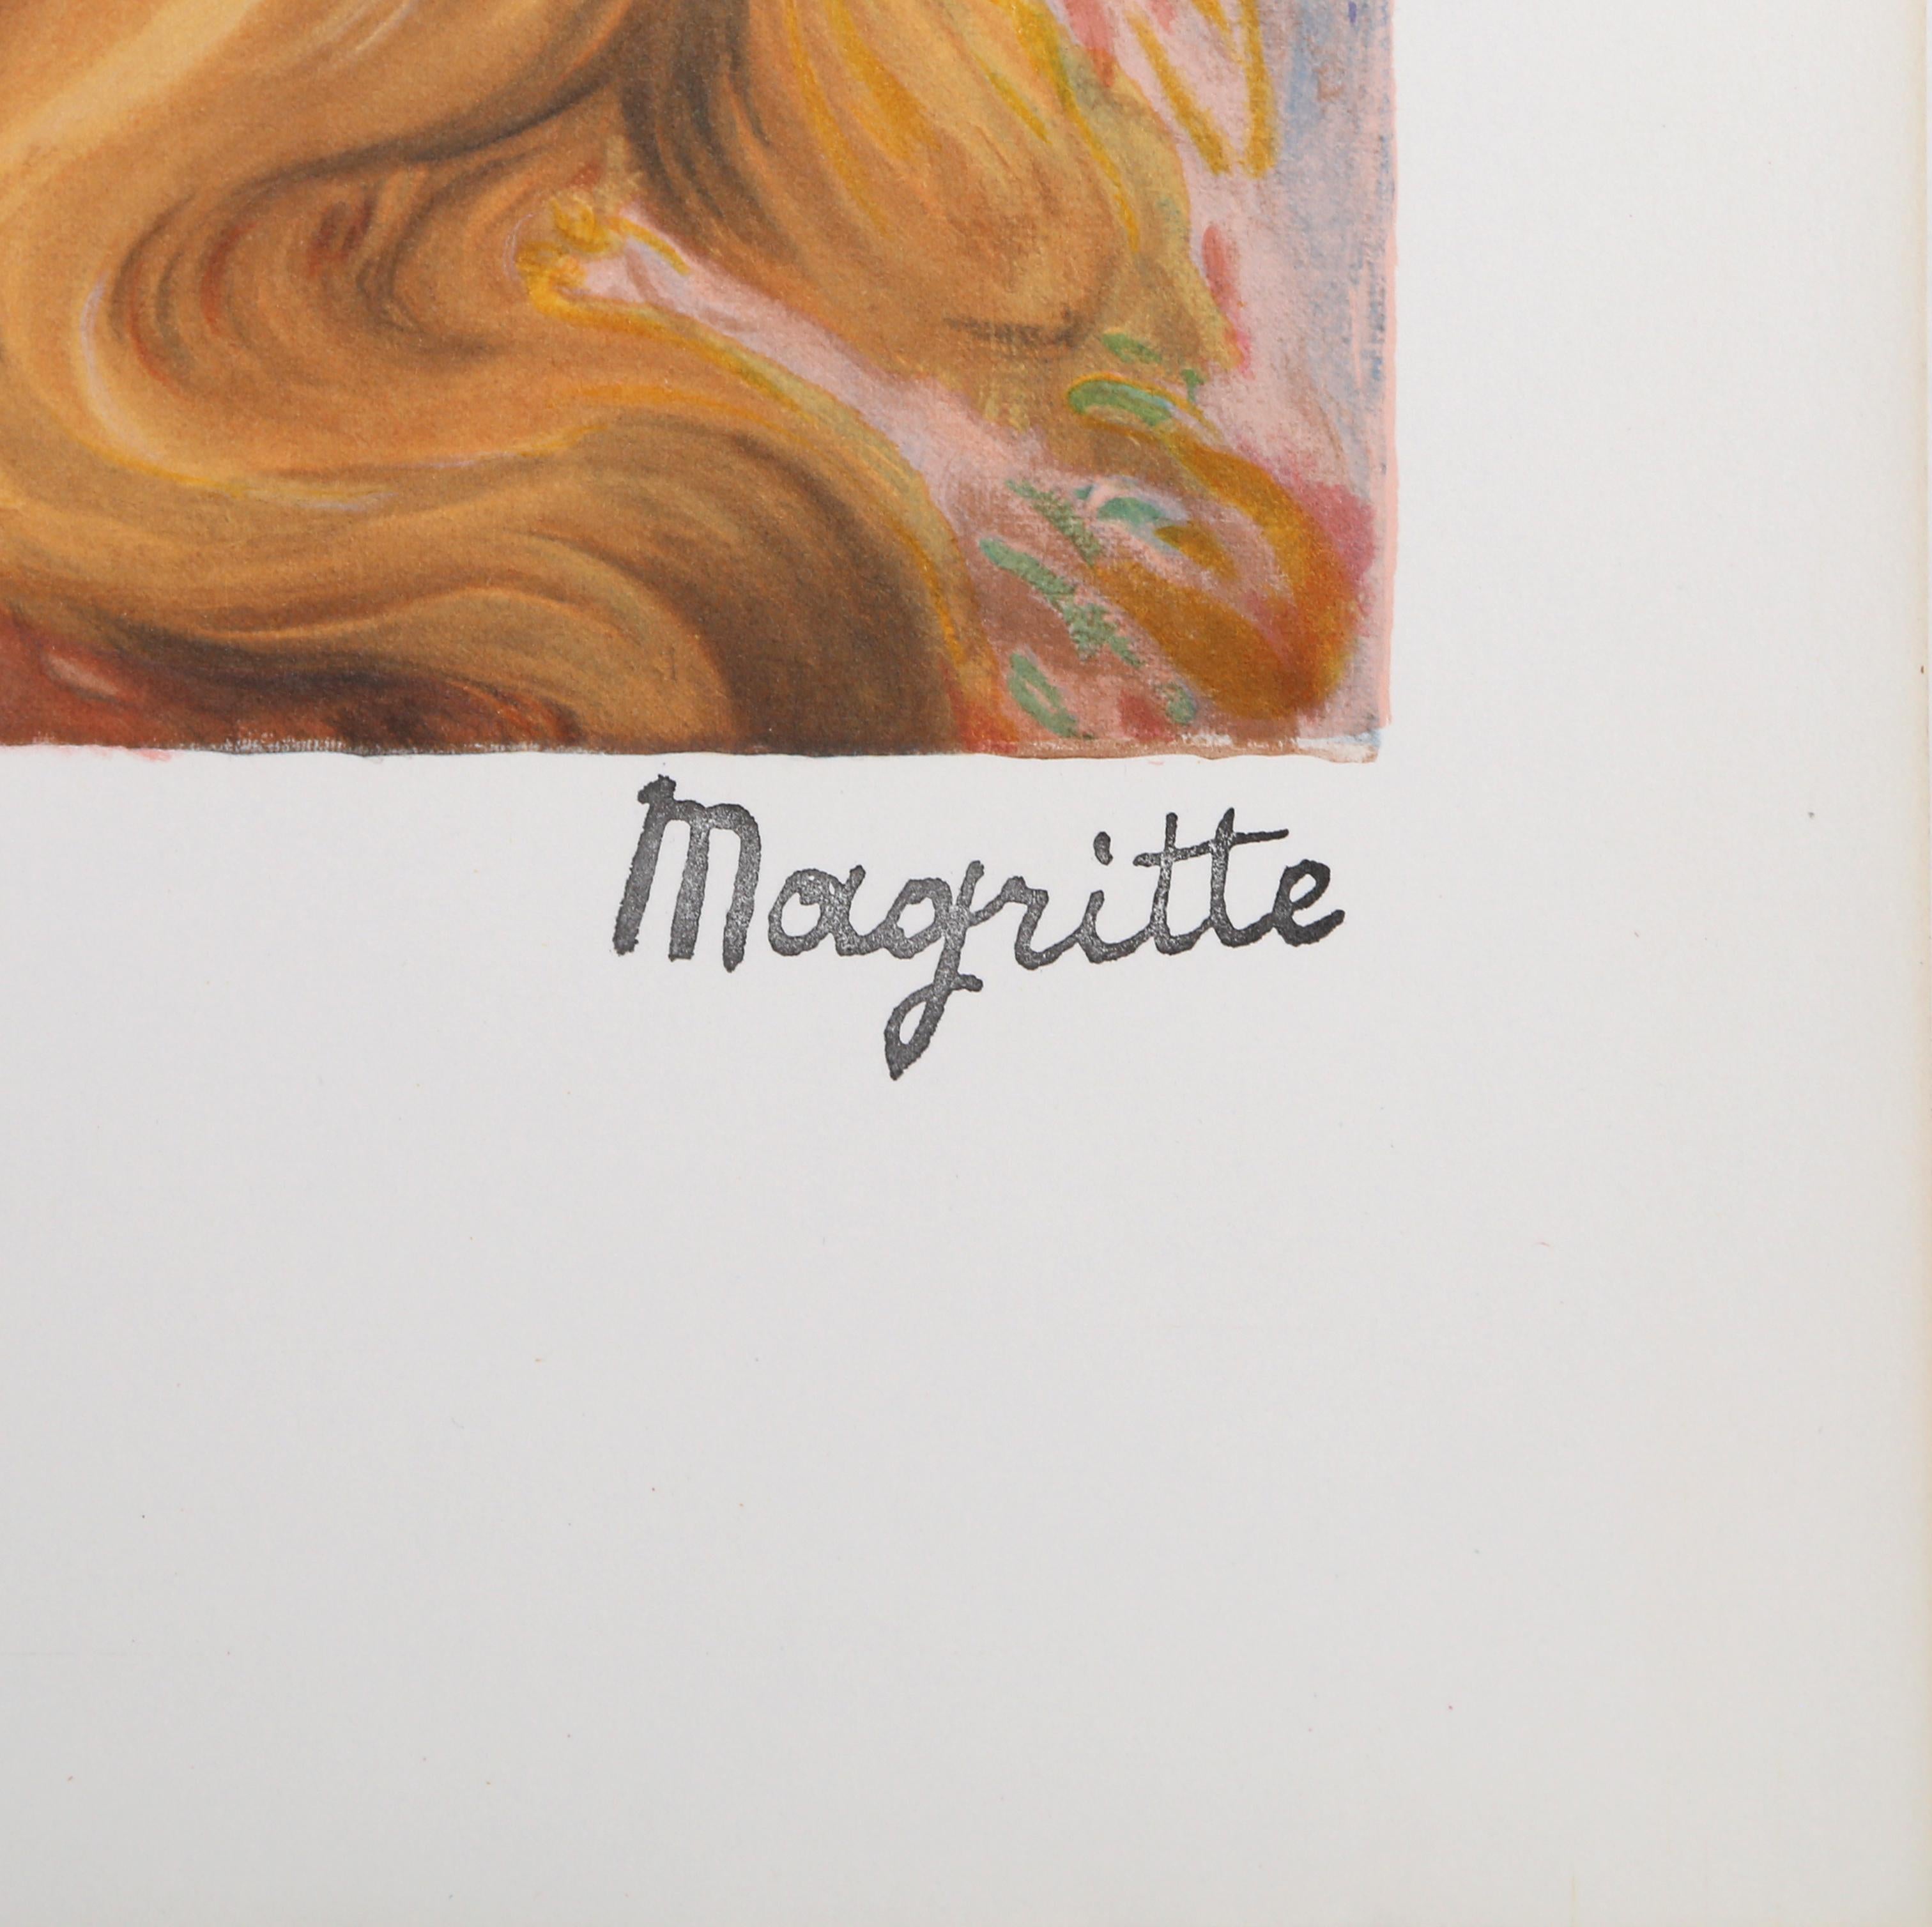 Le Viol, lithographie surréaliste d'après Magritte - Print de (after) René Magritte